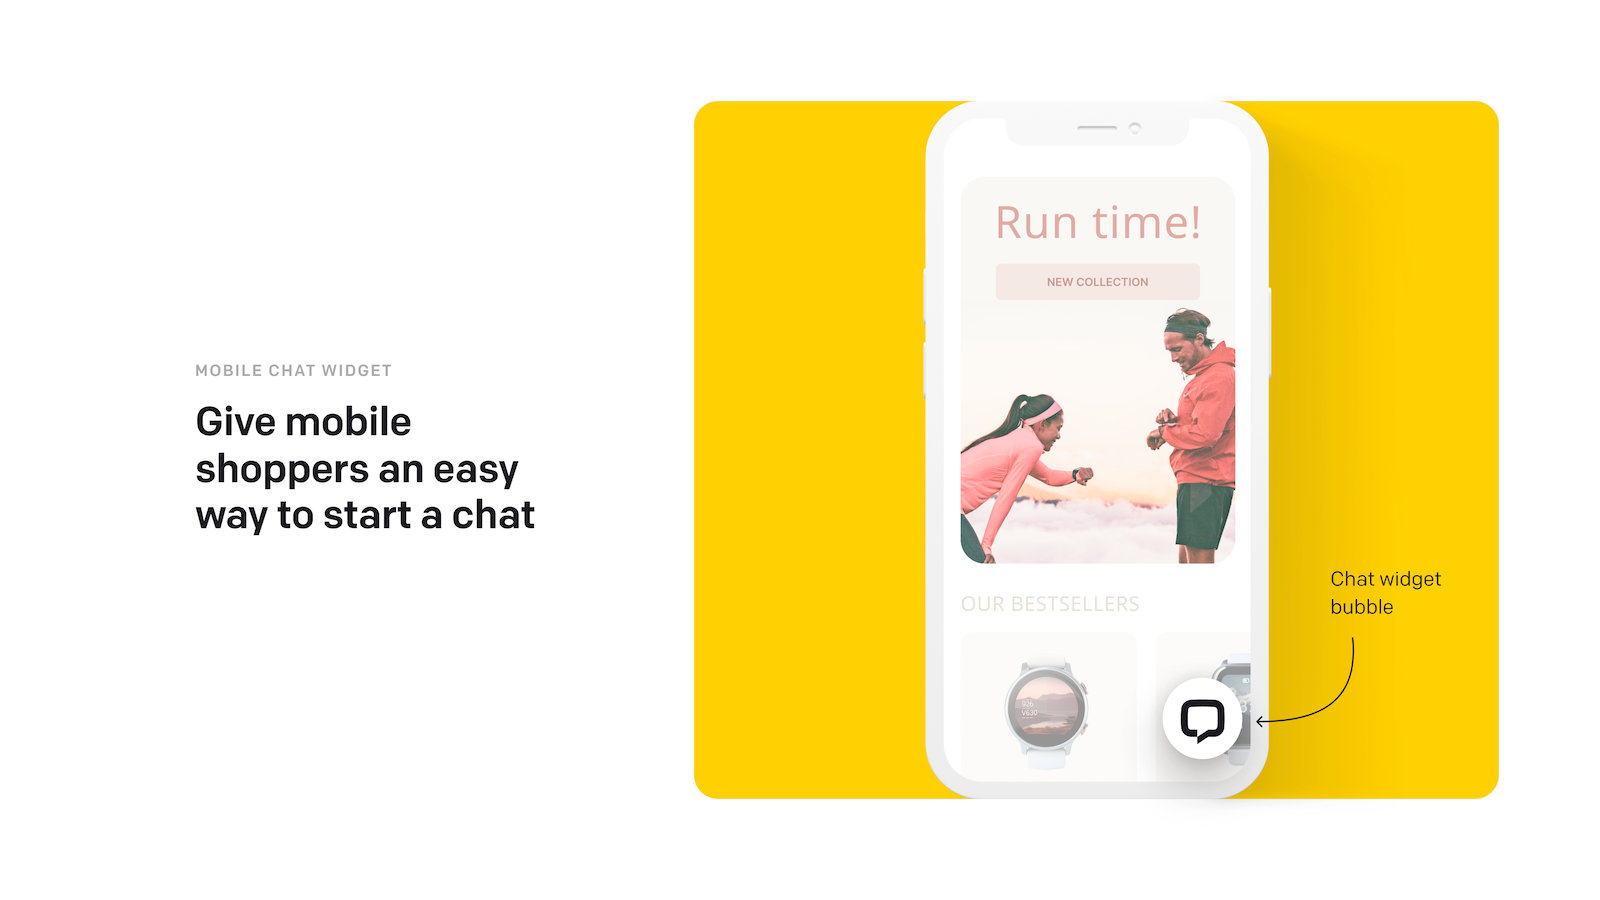 Een chat widget bubble die mobiele shoppers kunnen gebruiken om een chat te starten.